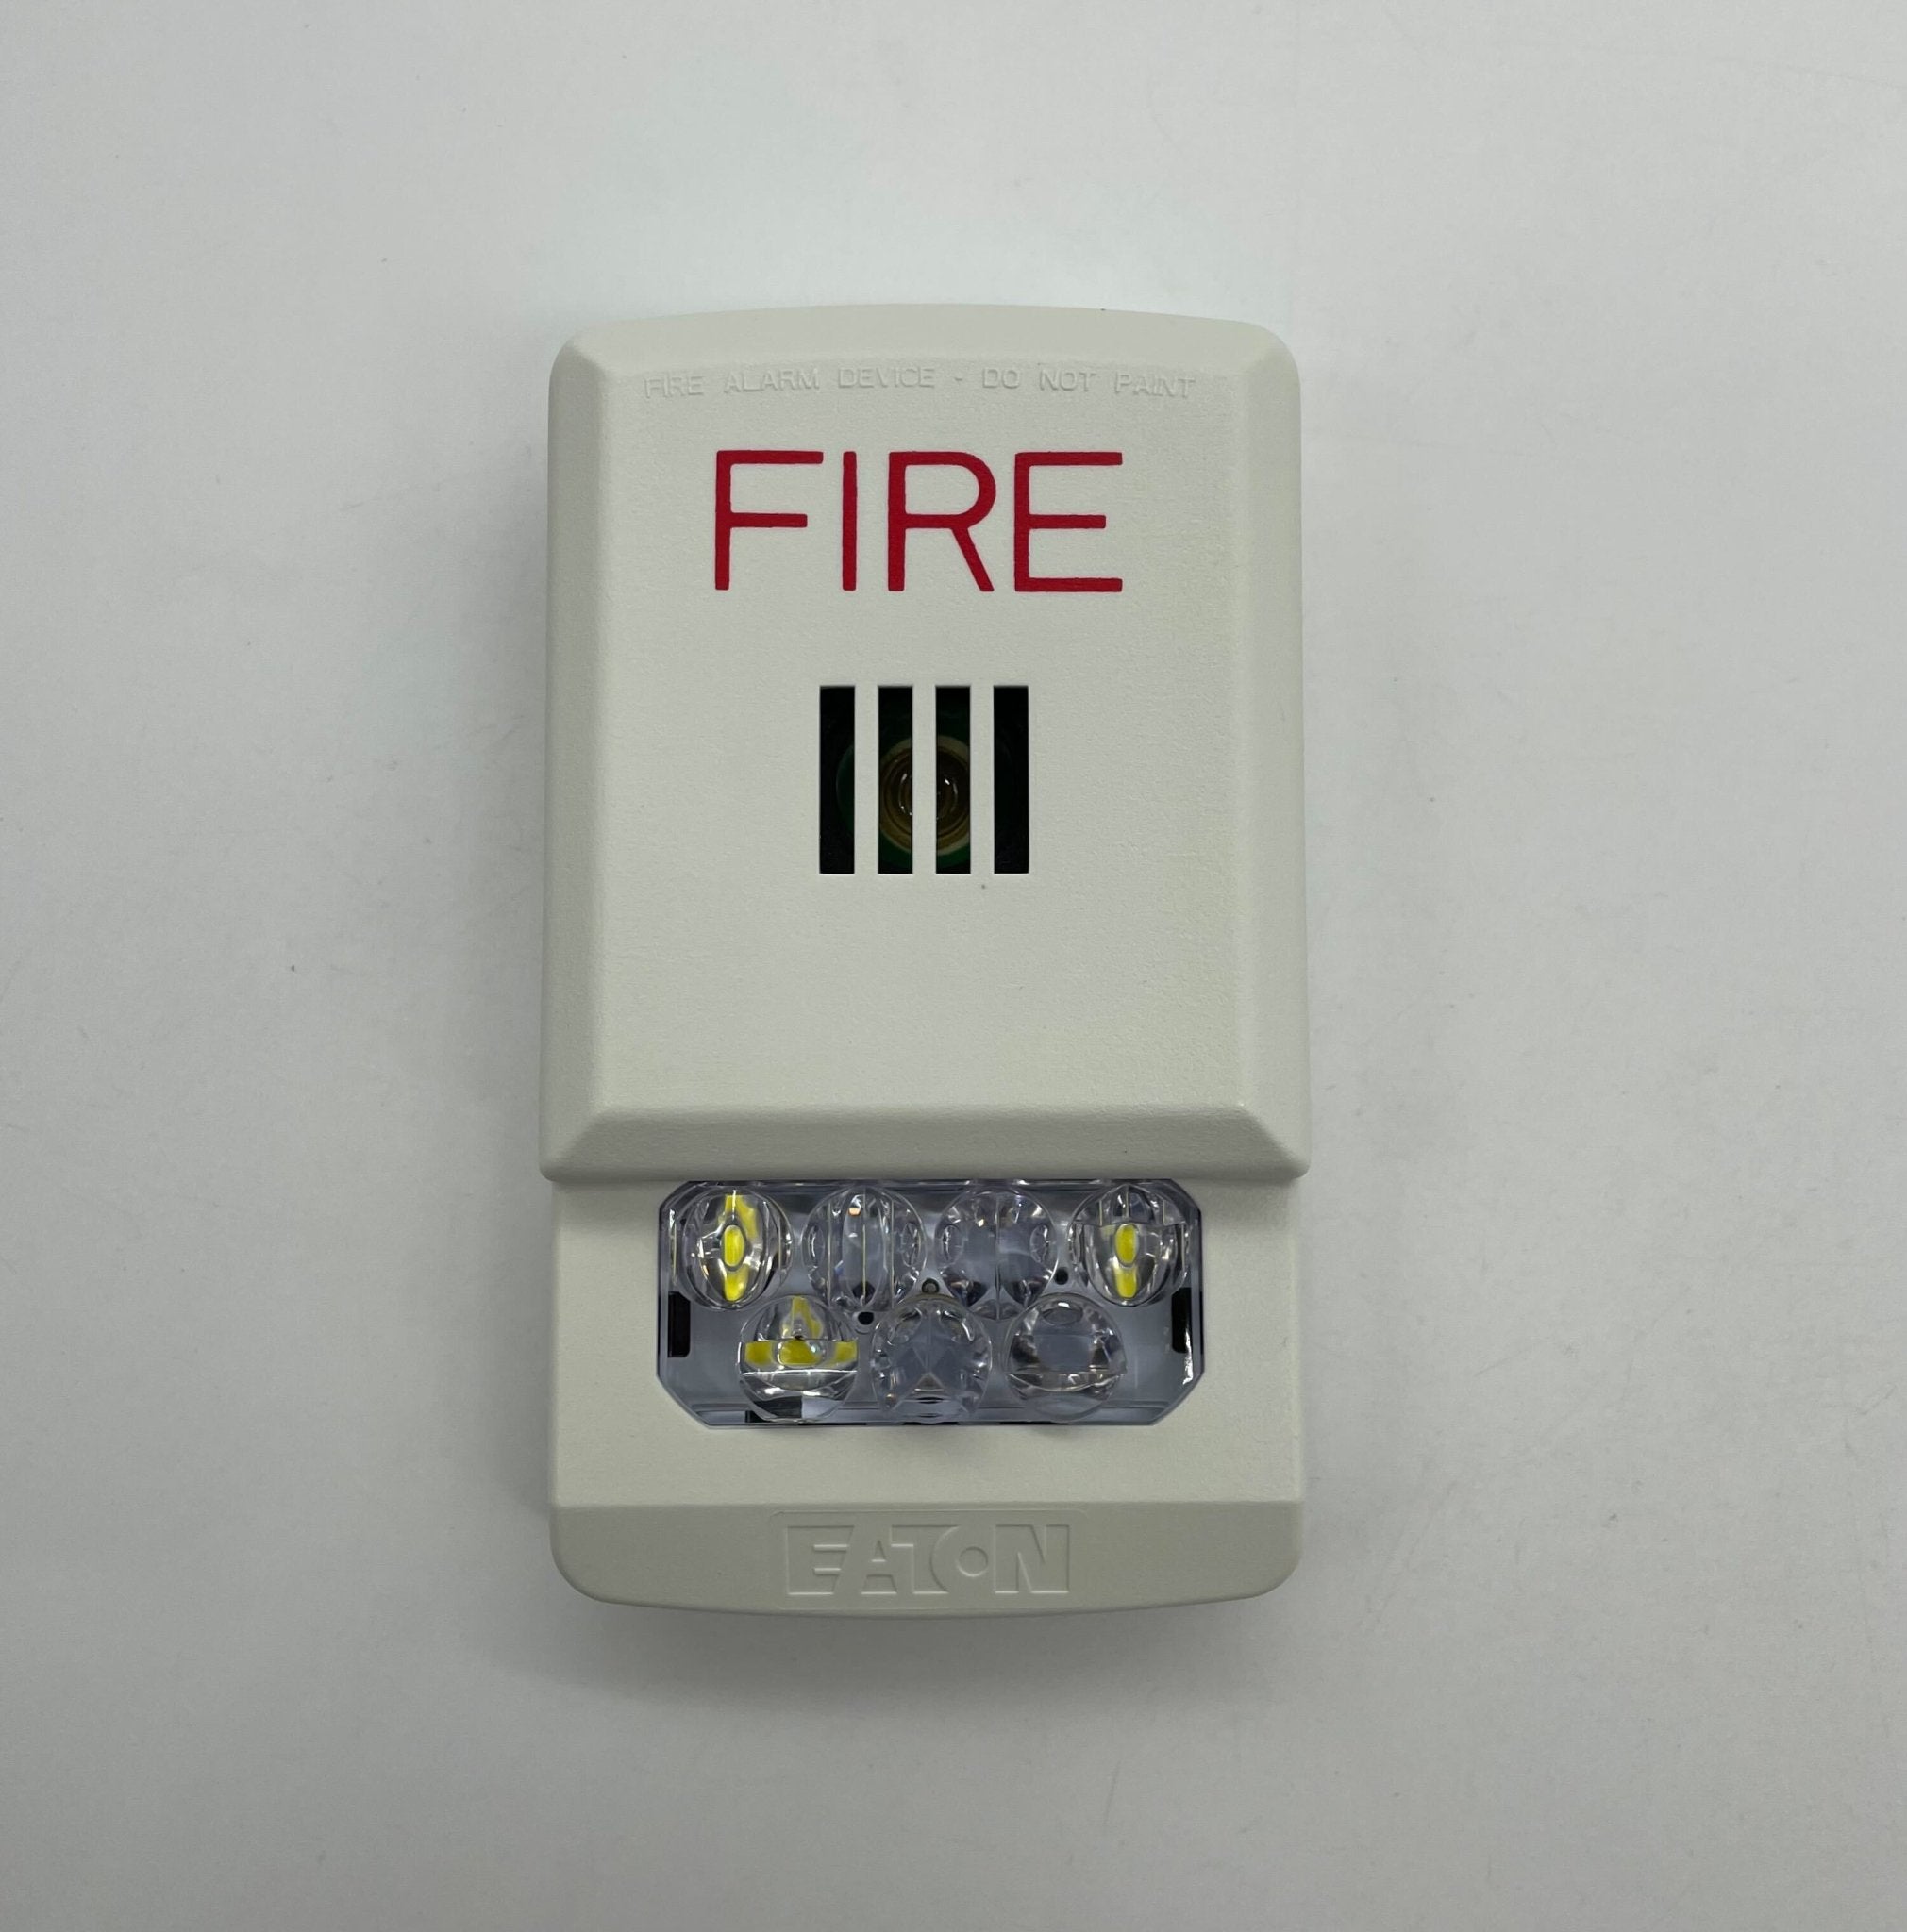 Wheelock ELHSW - The Fire Alarm Supplier